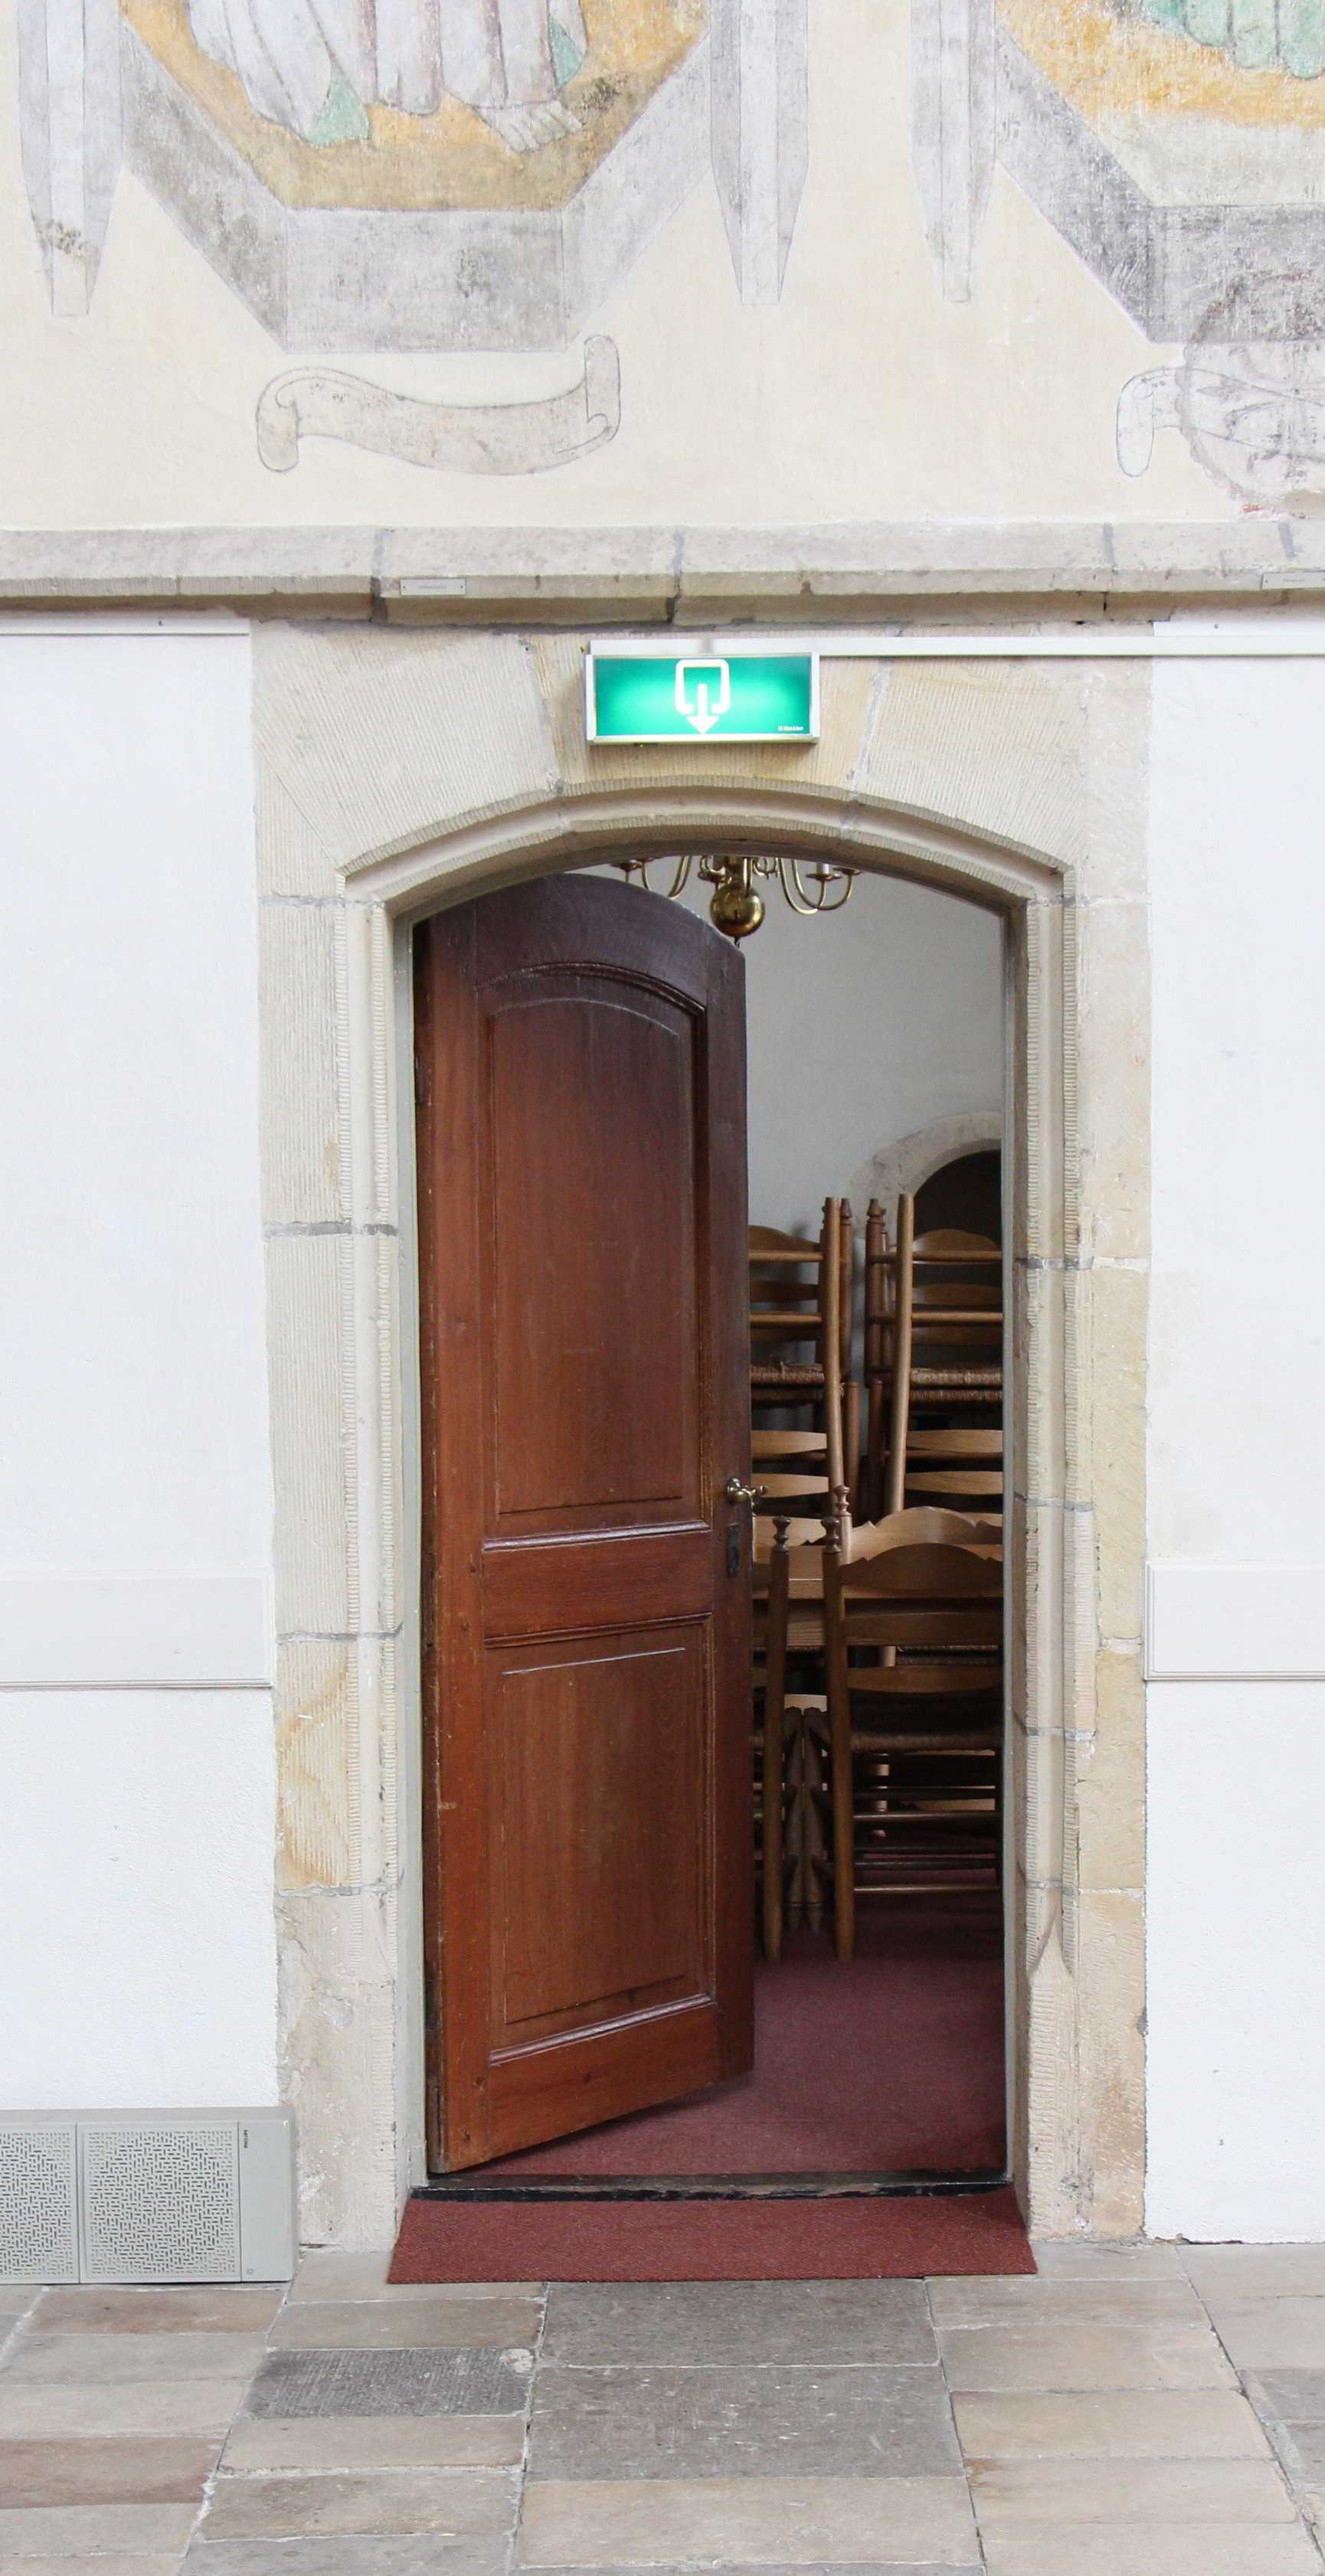 De deur tussen de voormalige sacristie of garvekamer, na 1616 consistoriekamer, en het kerkkoor. De koster stond voor deze deur tijdens de beraadslagingen over het handhaven of vervangen van de zittende leden van het stadsbestuur.